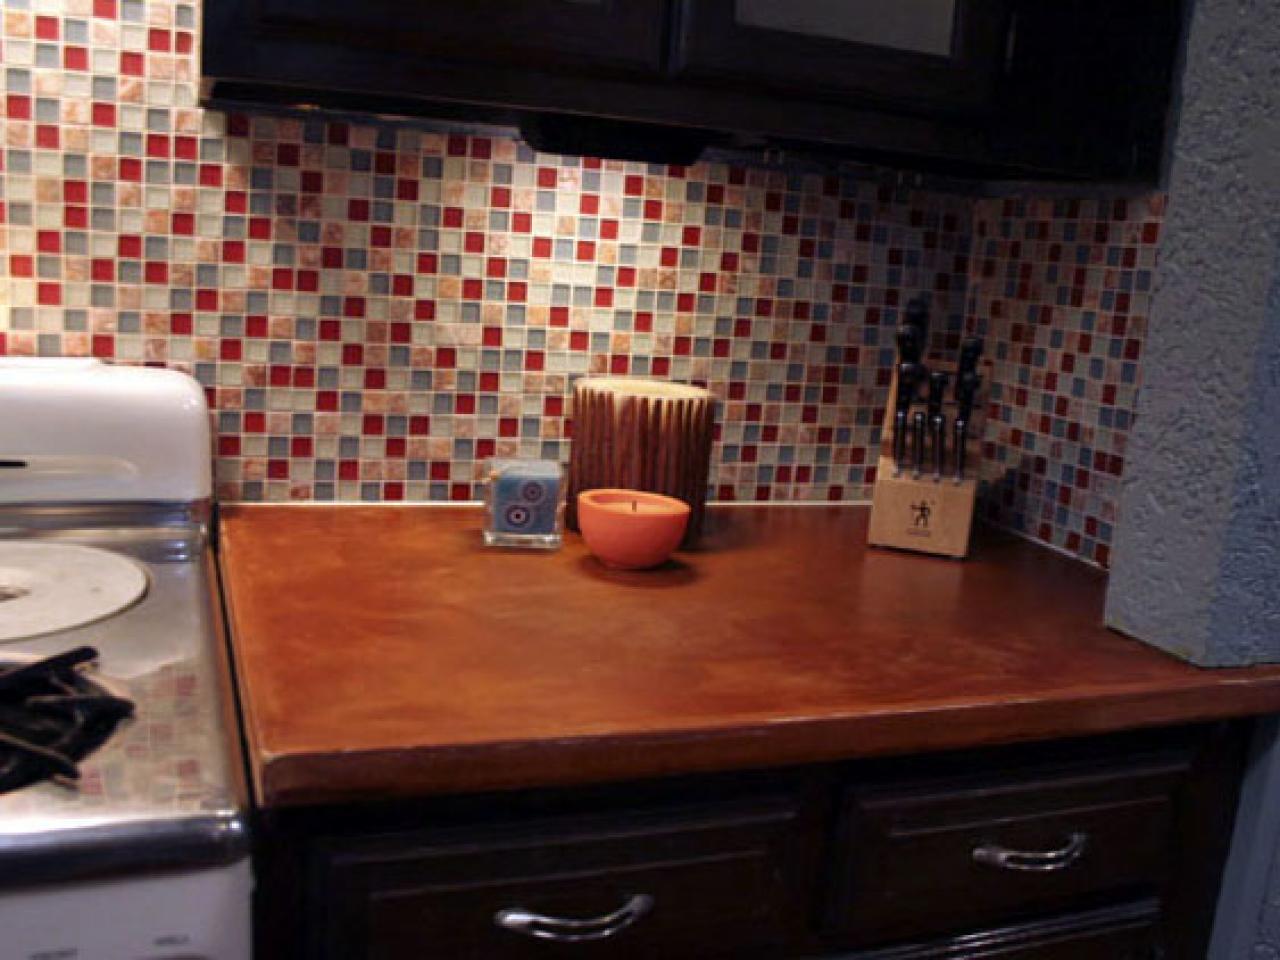 Installing a Tile Backsplash in Your Kitchen   HGTV